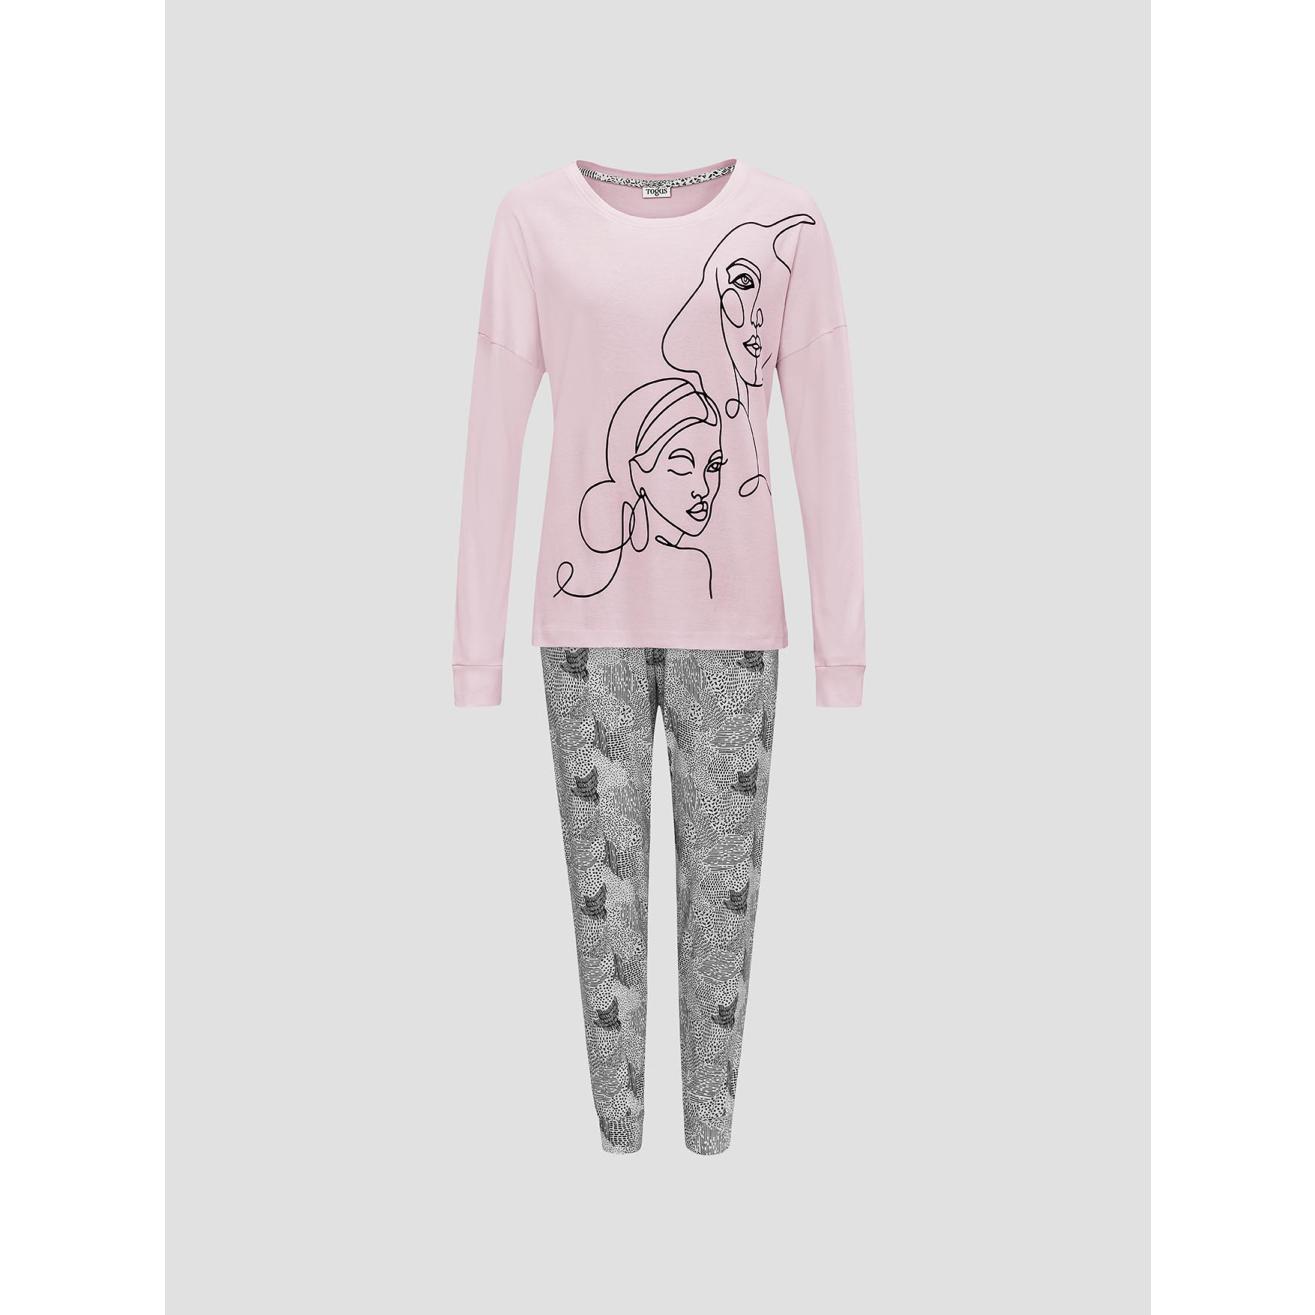 Пижама для девочек Togas Teens Кэрри розово-серая 146 см жен пижама с шортами арт 23 0098 светло серый р 46